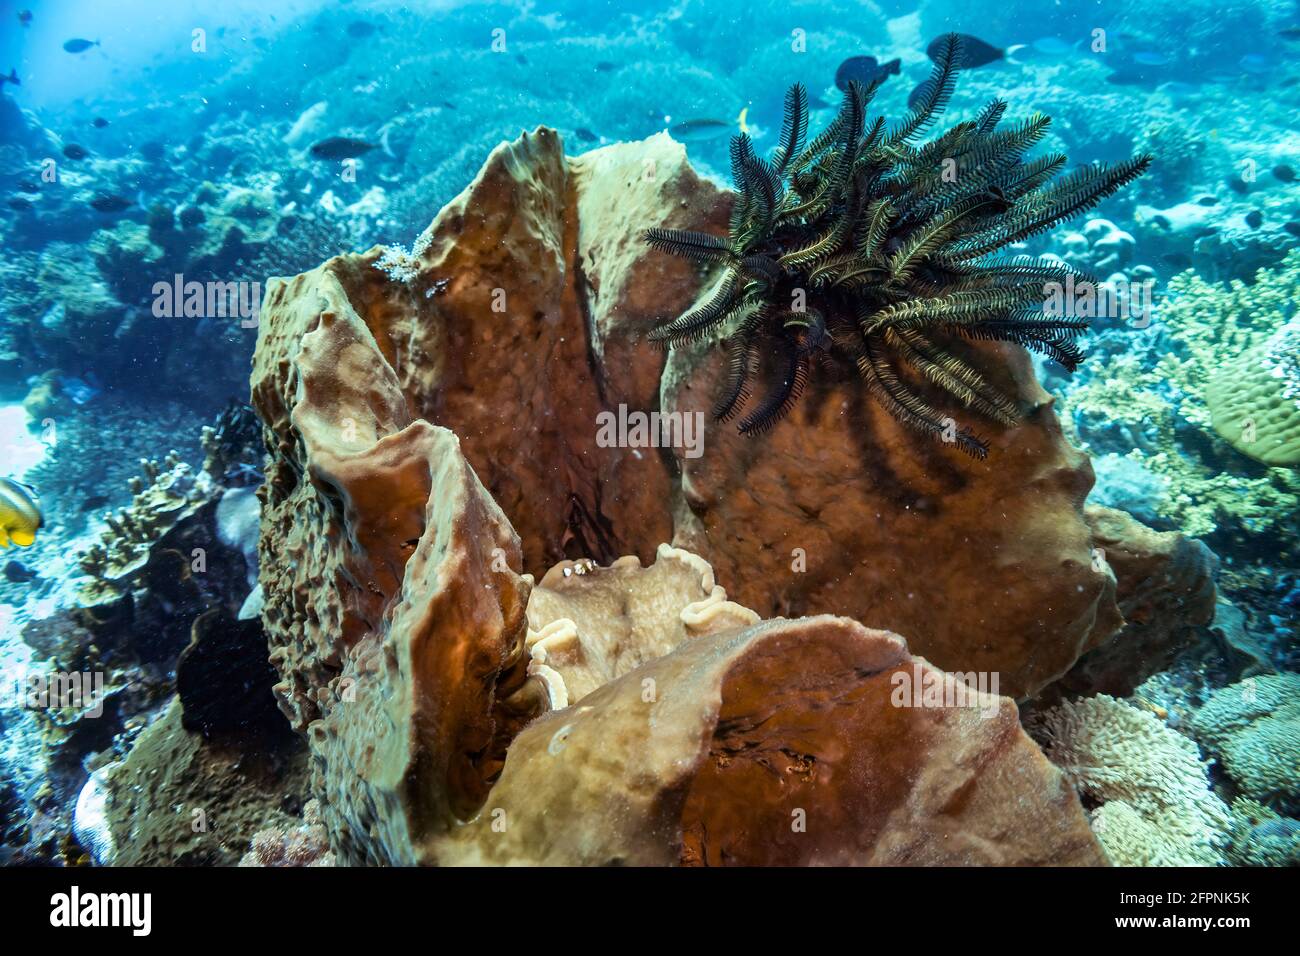 Schwarze Schwimmfeder Seestern auf Korallenriff. Aufgenommen während eines Tauchgangs im warmen tropischen Meer Indonesiens, Bali. Vorderansicht mit verschwommener Rückenpartie Stockfoto